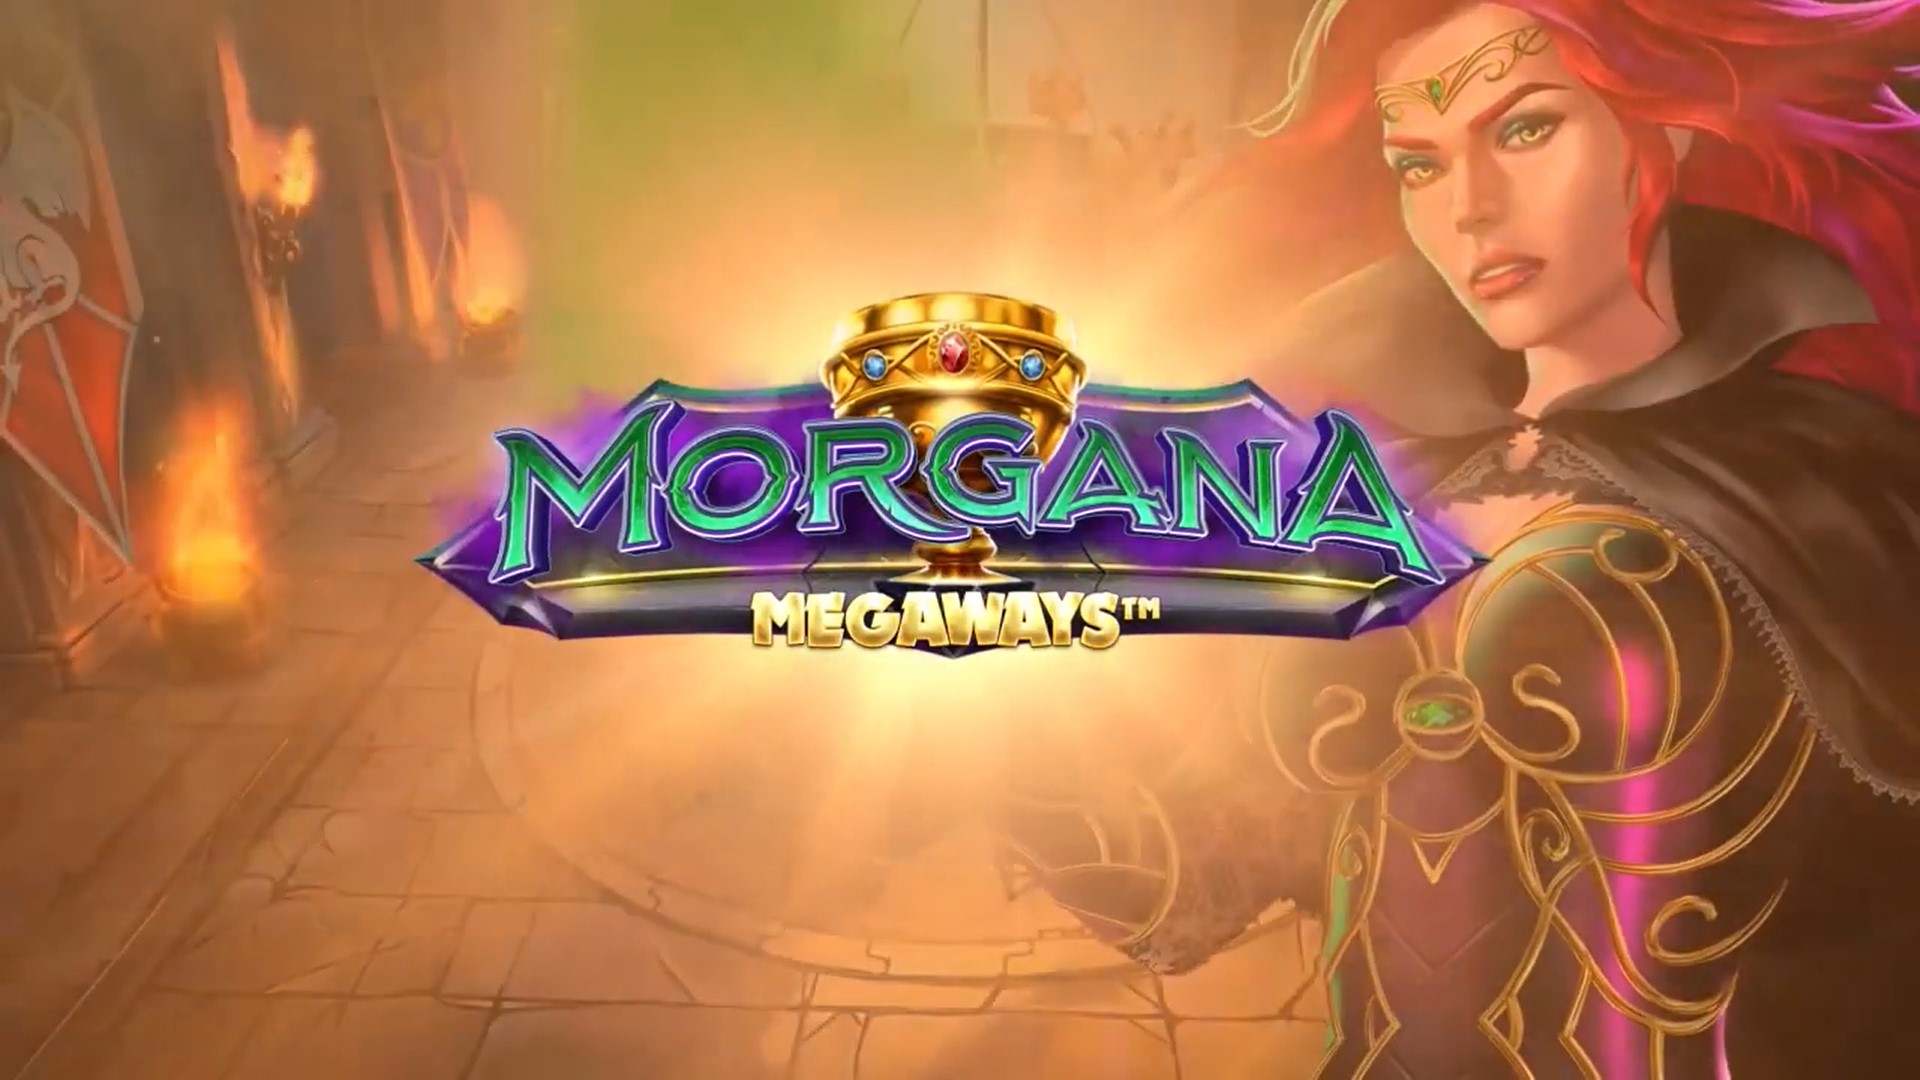 Morgana Megaways iSoftBet